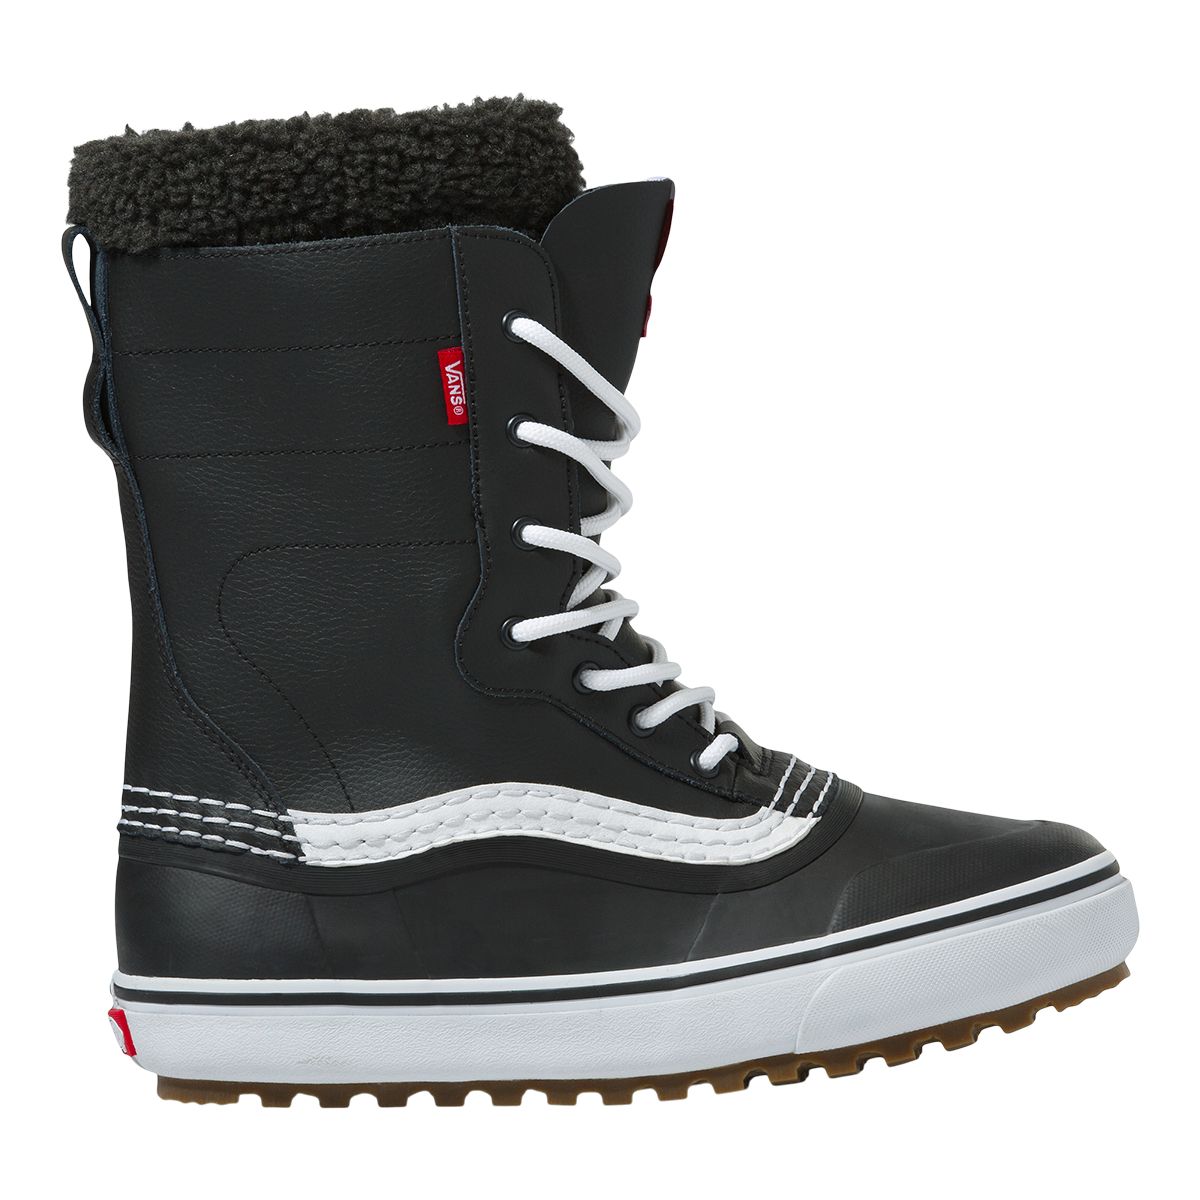 Image of Vans Men's Standard Snow MTE Water-Resistant Non-Slip Winter Boots